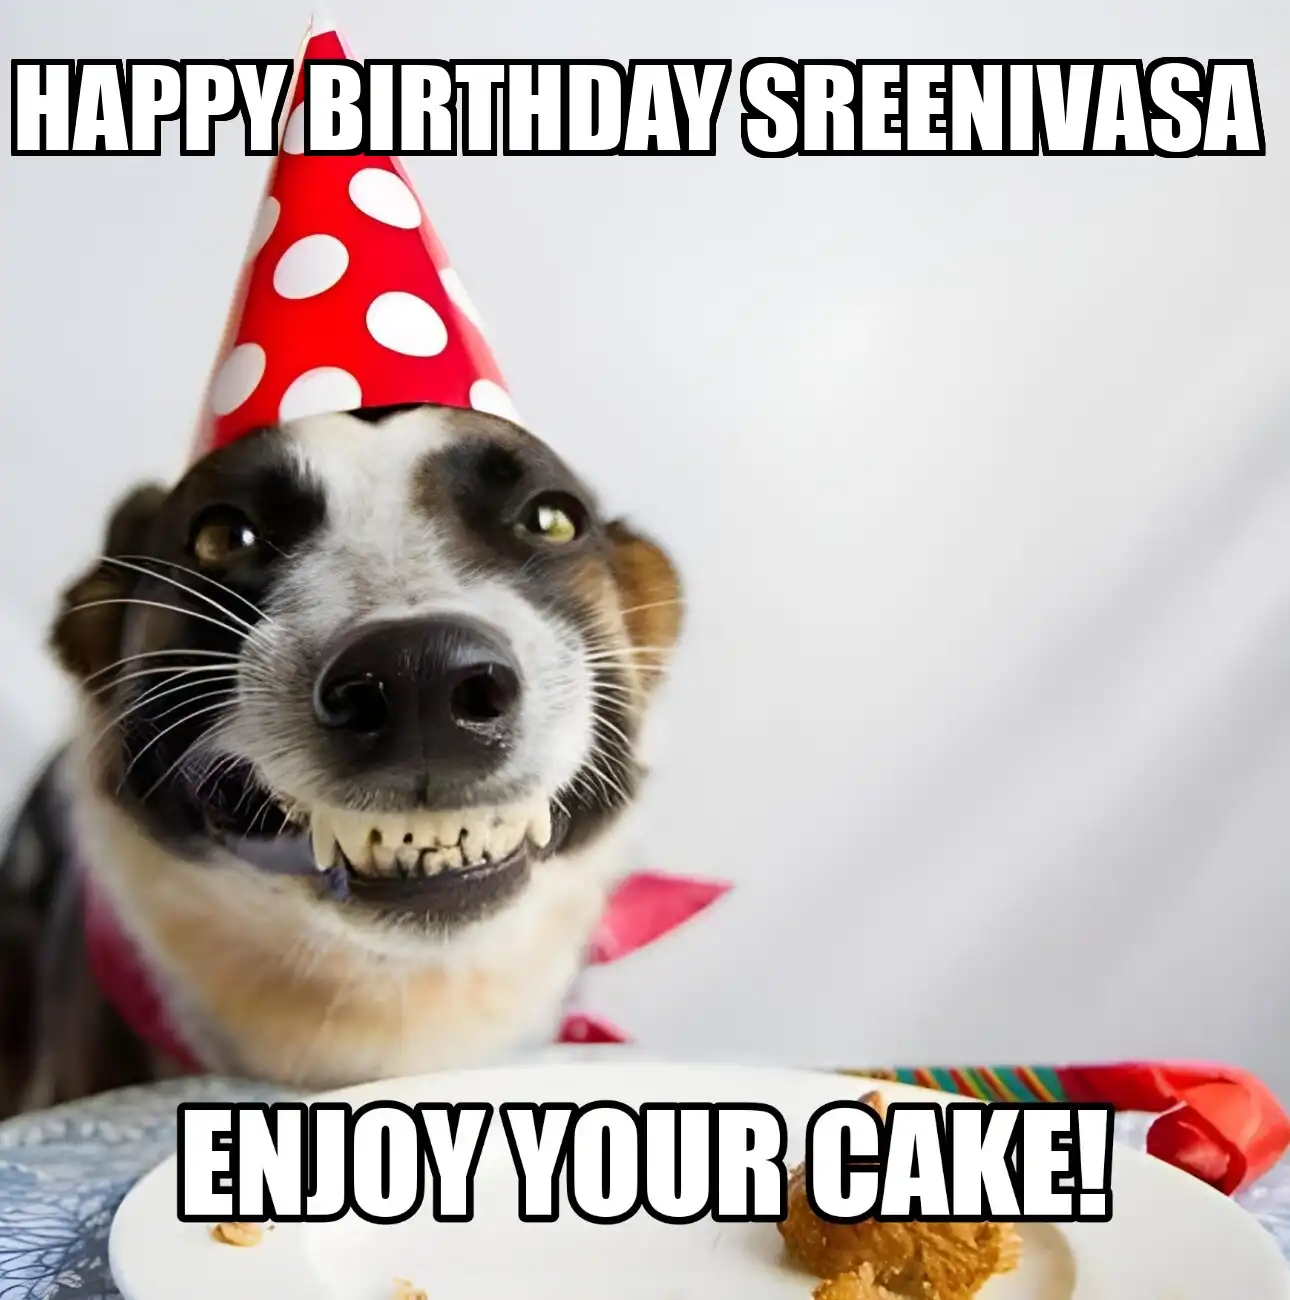 Happy Birthday Sreenivasa Enjoy Your Cake Dog Meme